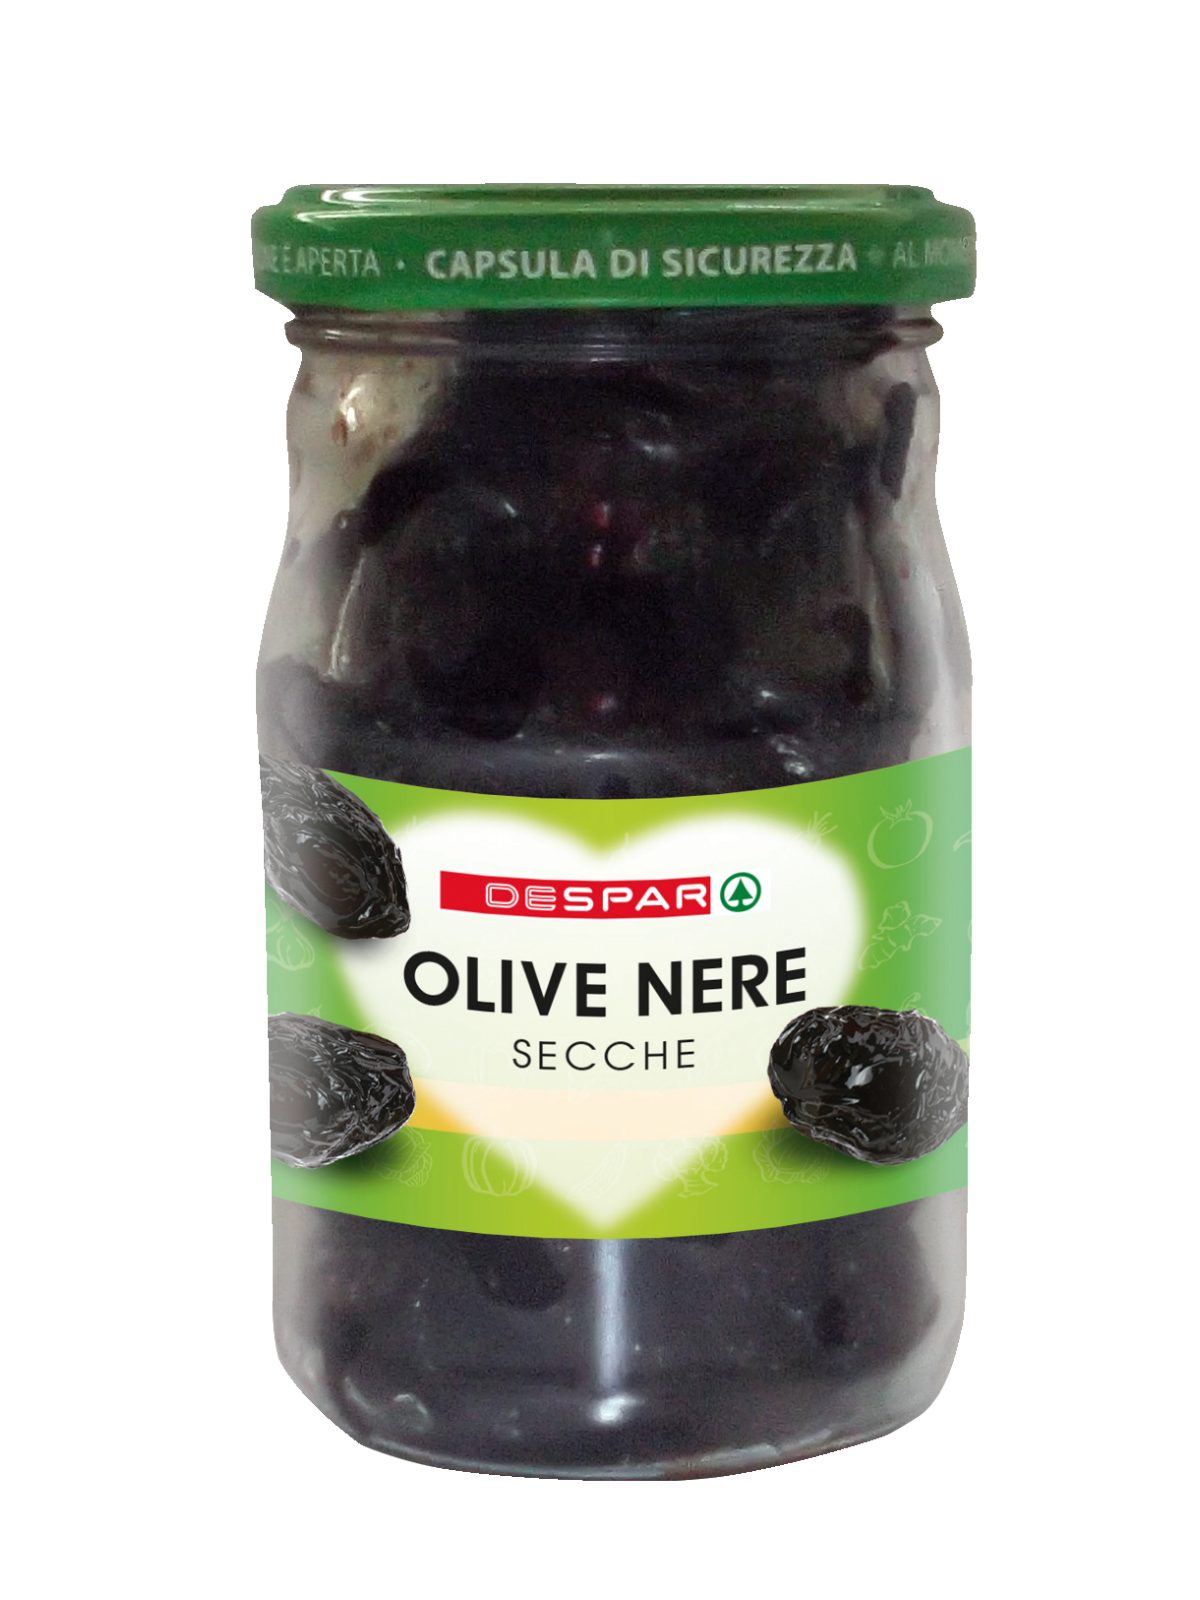 Olive nere secche